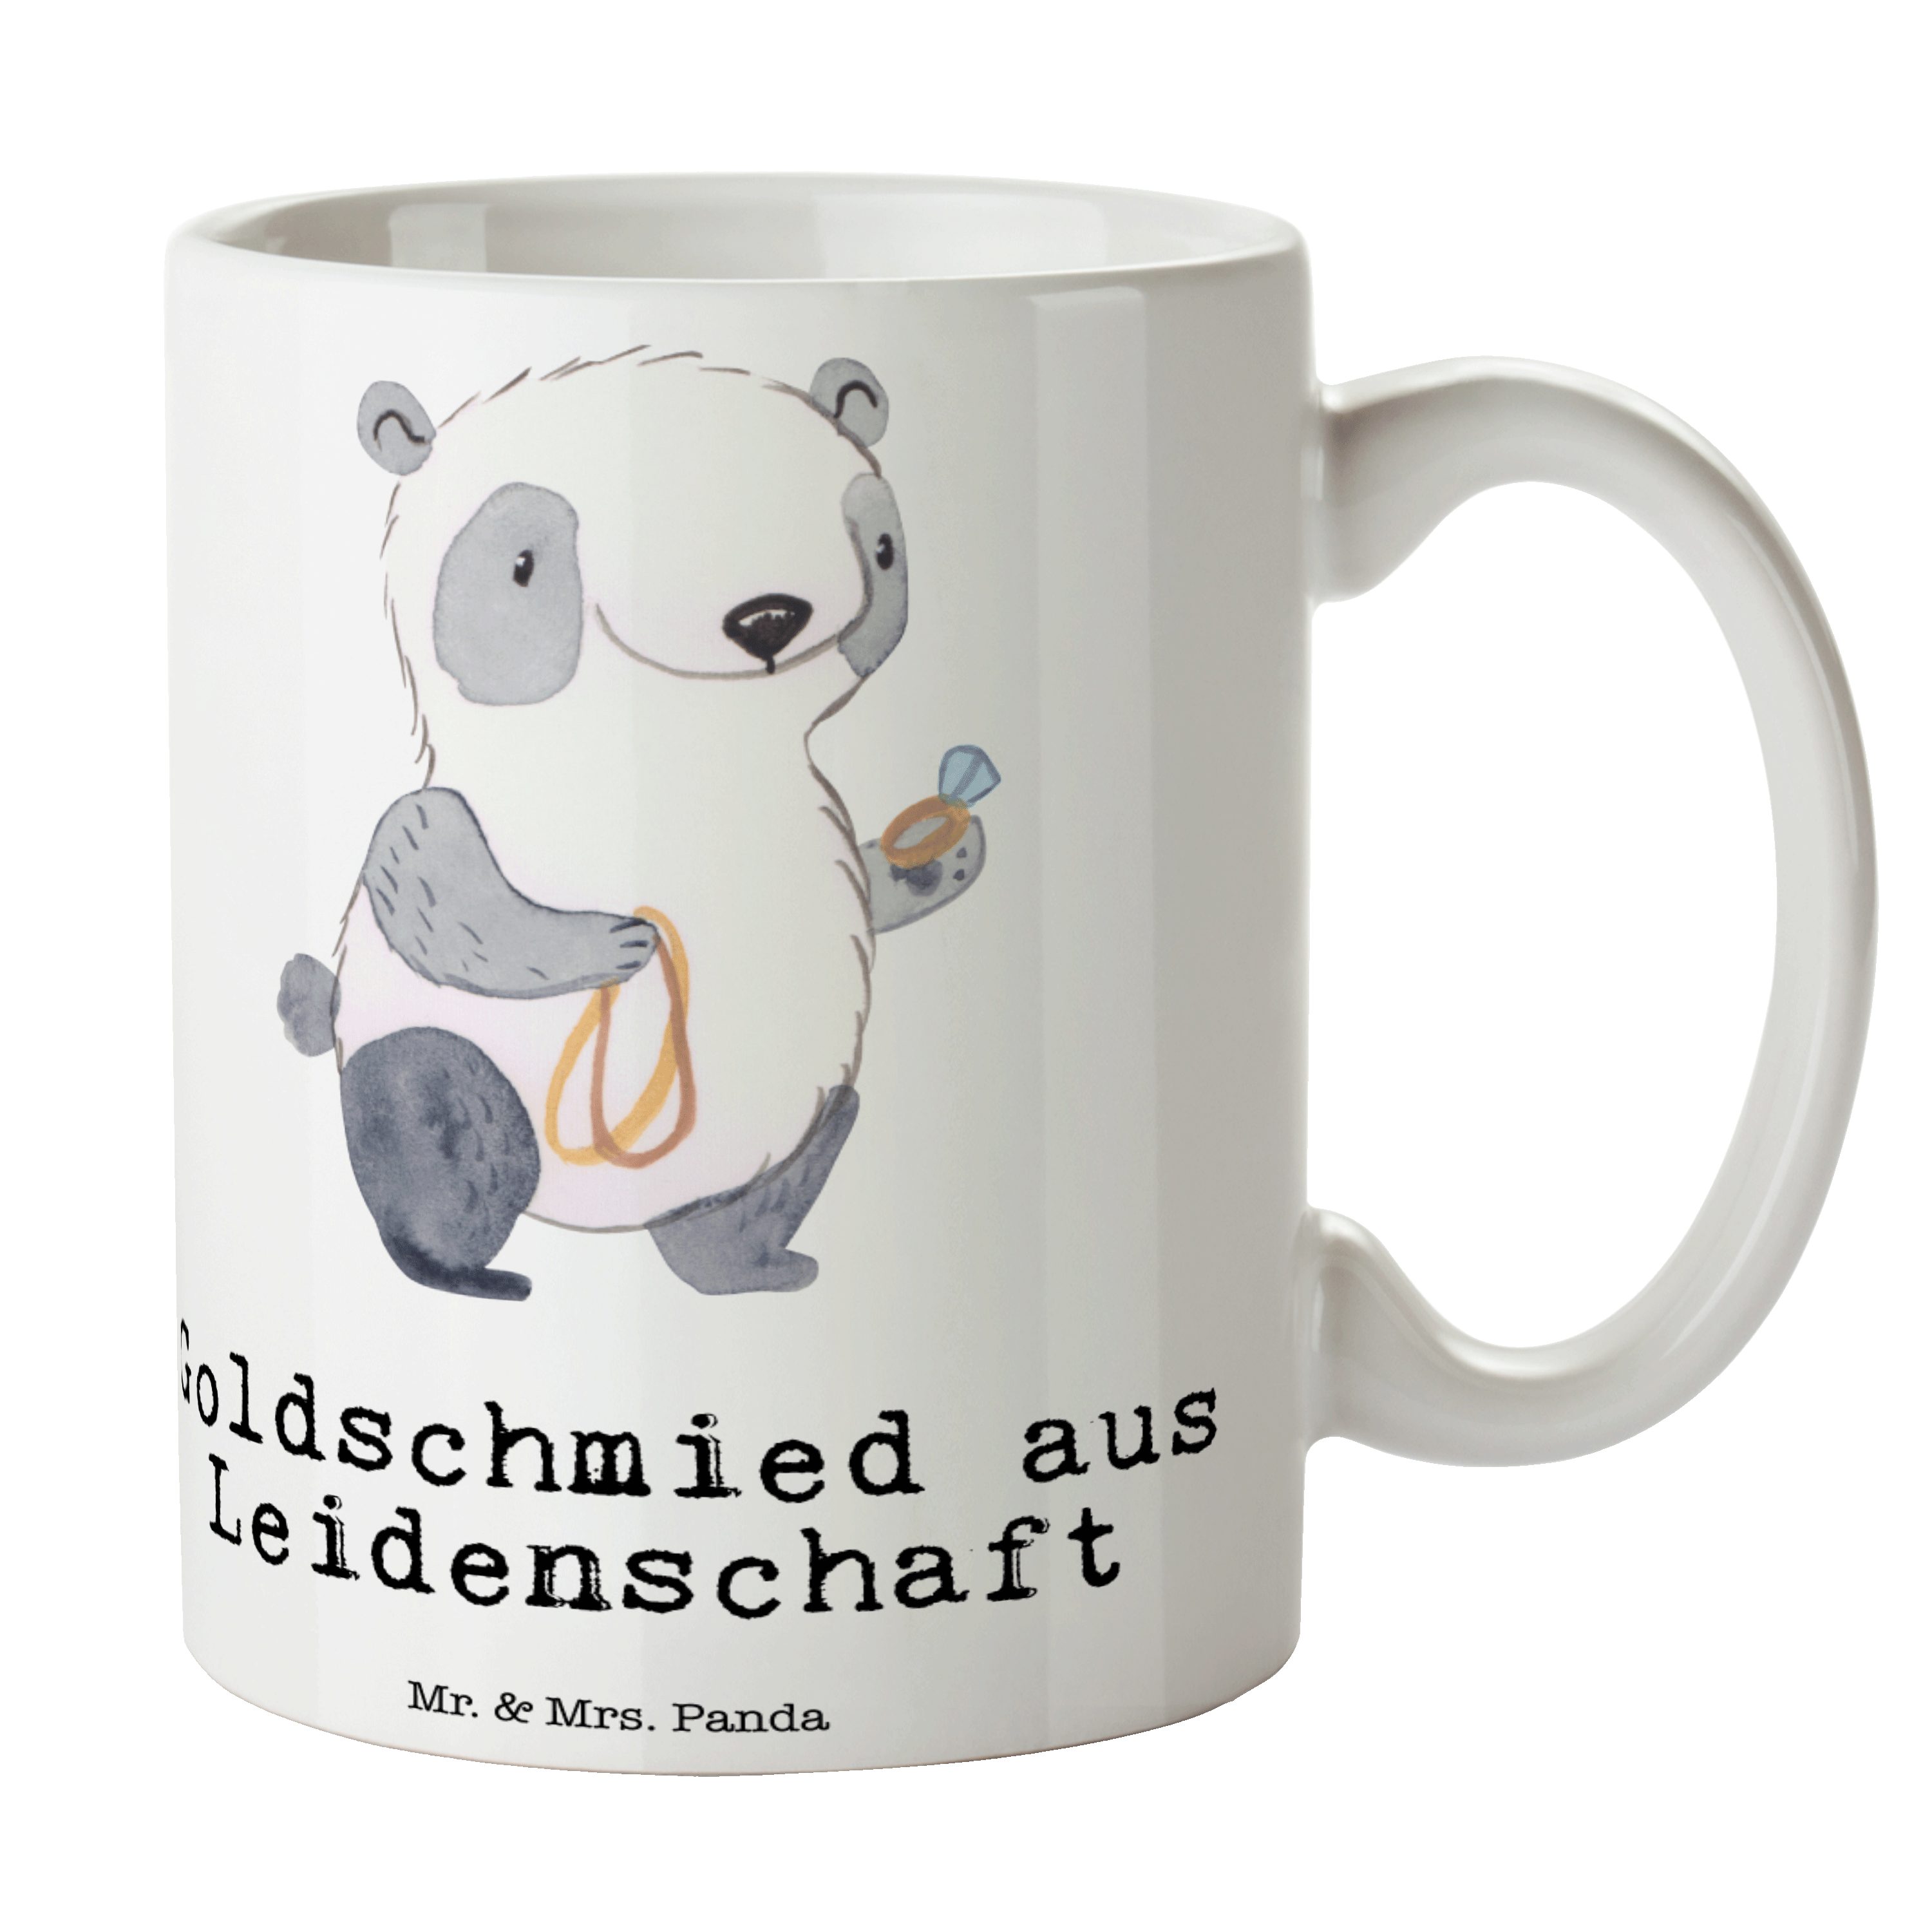 Mr. & Mrs. Panda Tasse Goldschmied aus Leidenschaft - Weiß - Geschenk, Tasse, Porzellantasse, Keramik